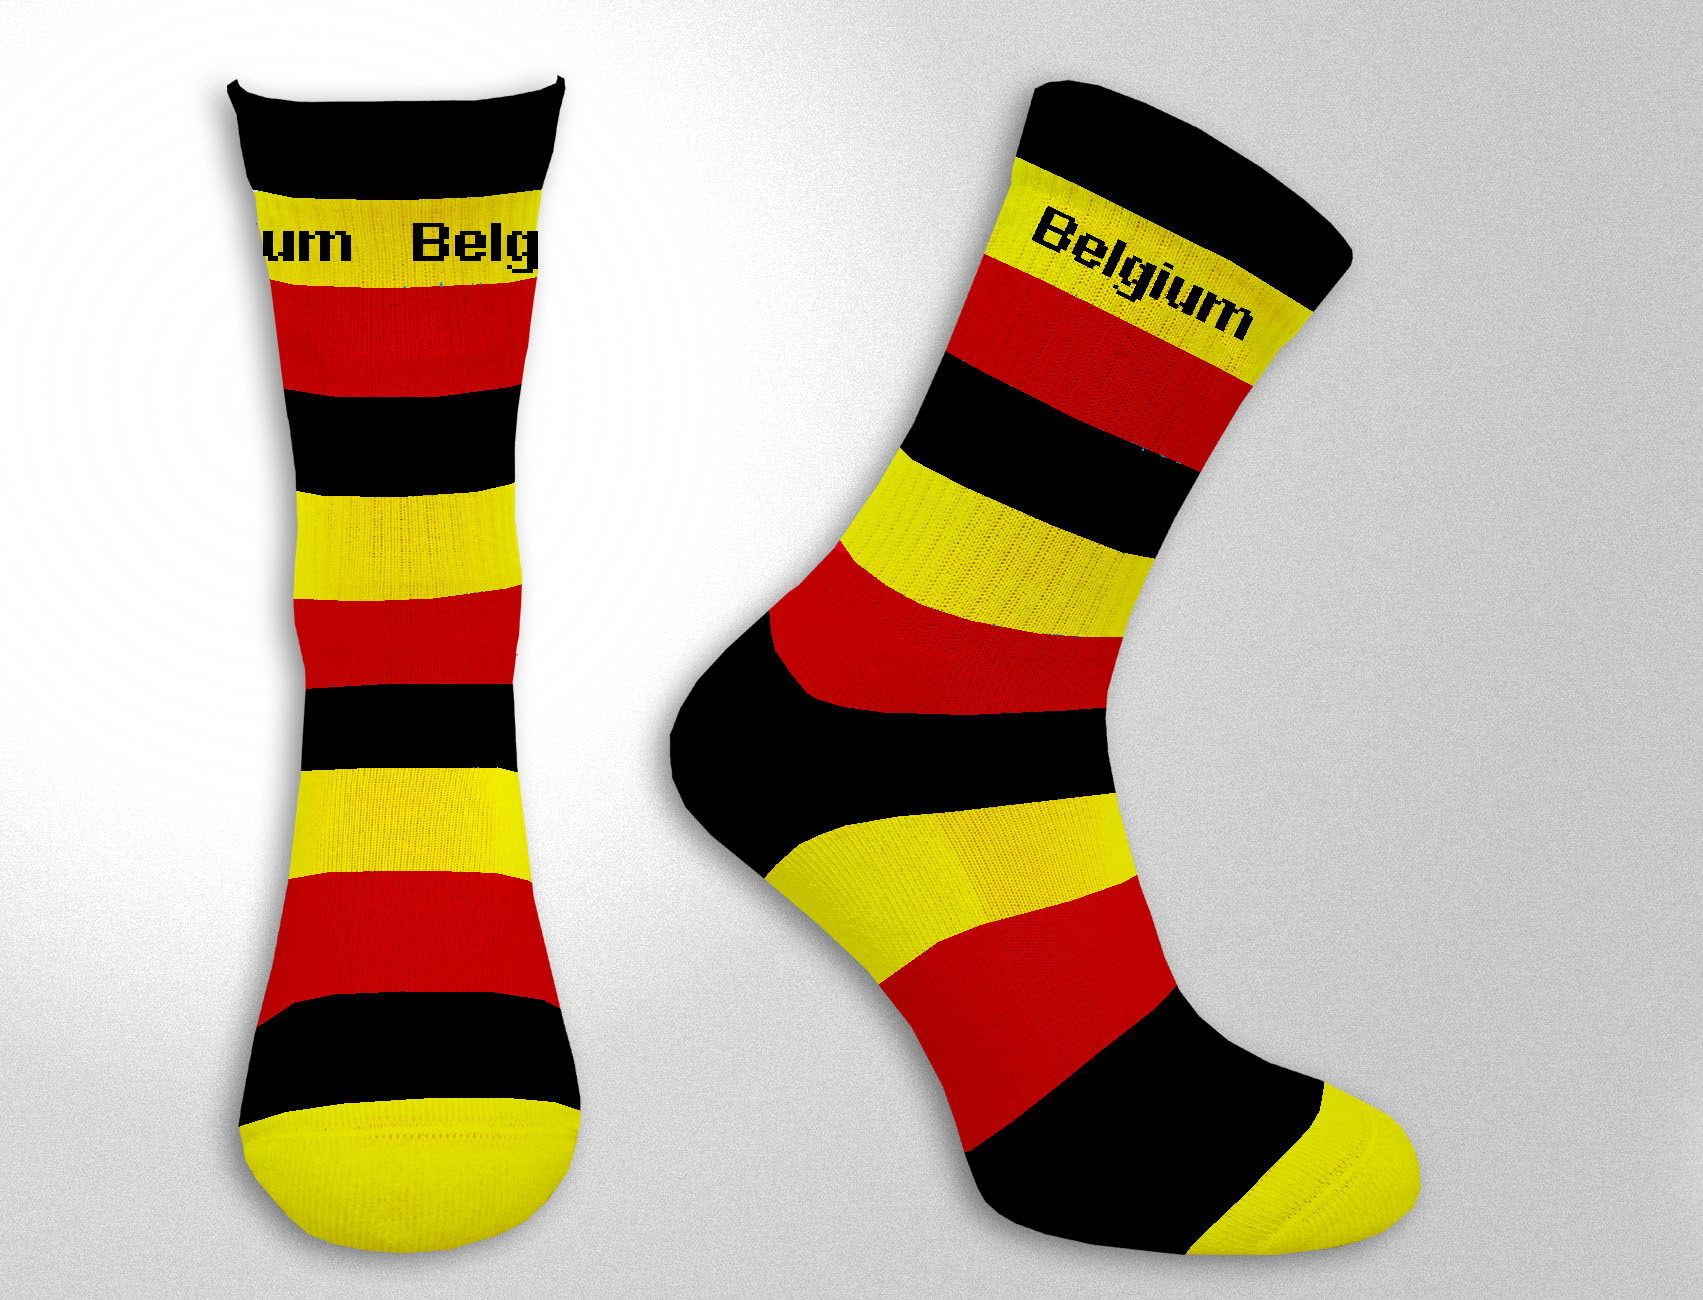 Zwart/geel/rood sokken België - 1891 Shop